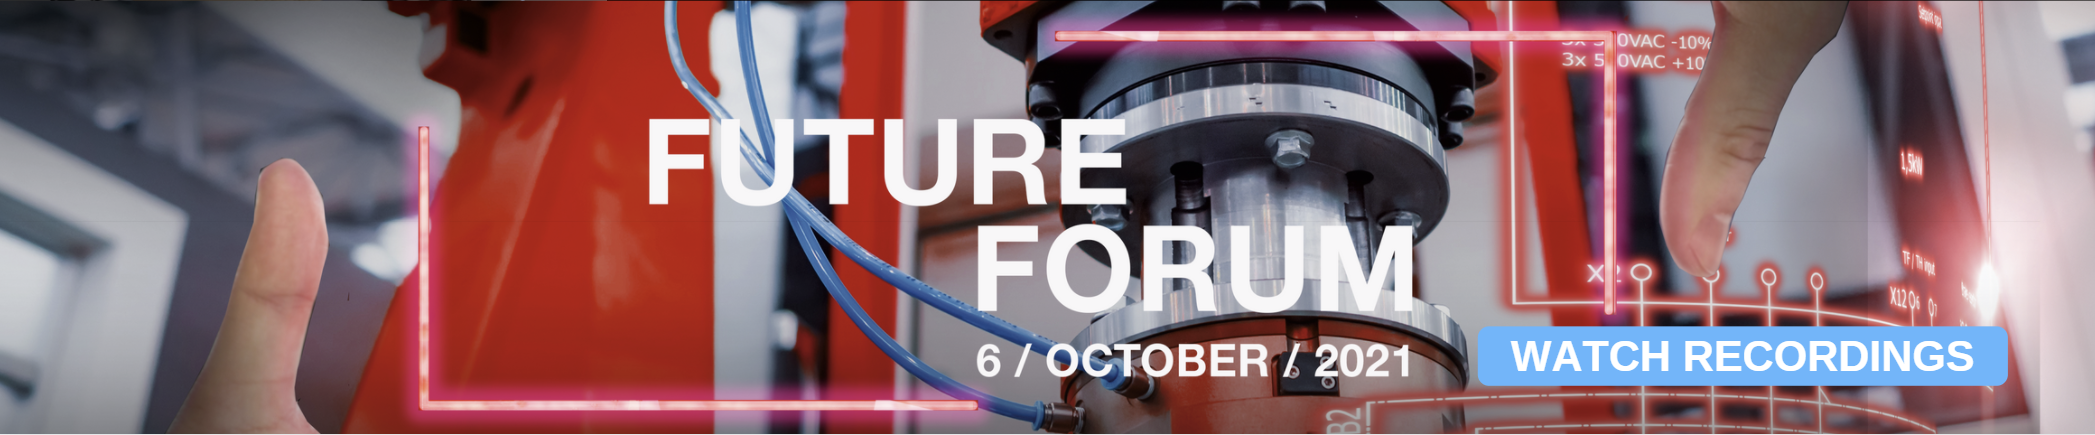 Future forum cta